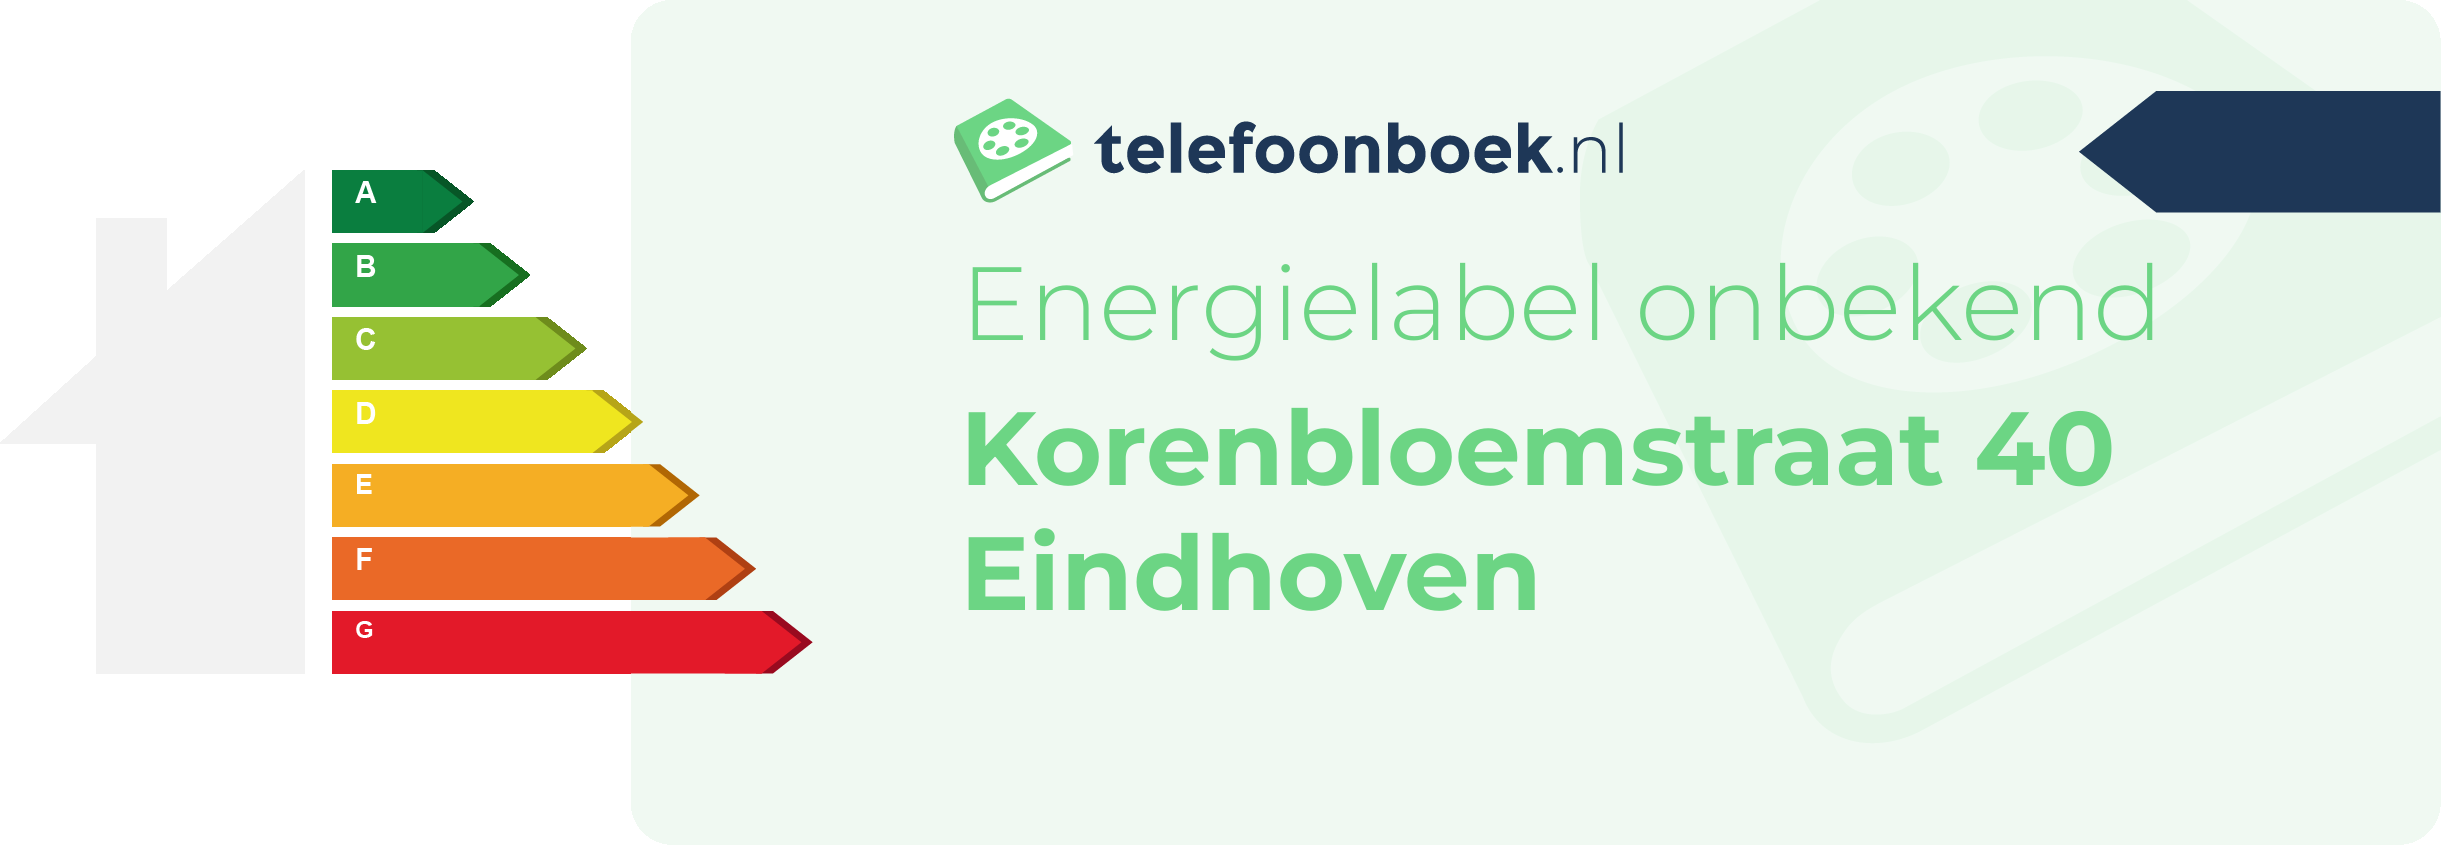 Energielabel Korenbloemstraat 40 Eindhoven